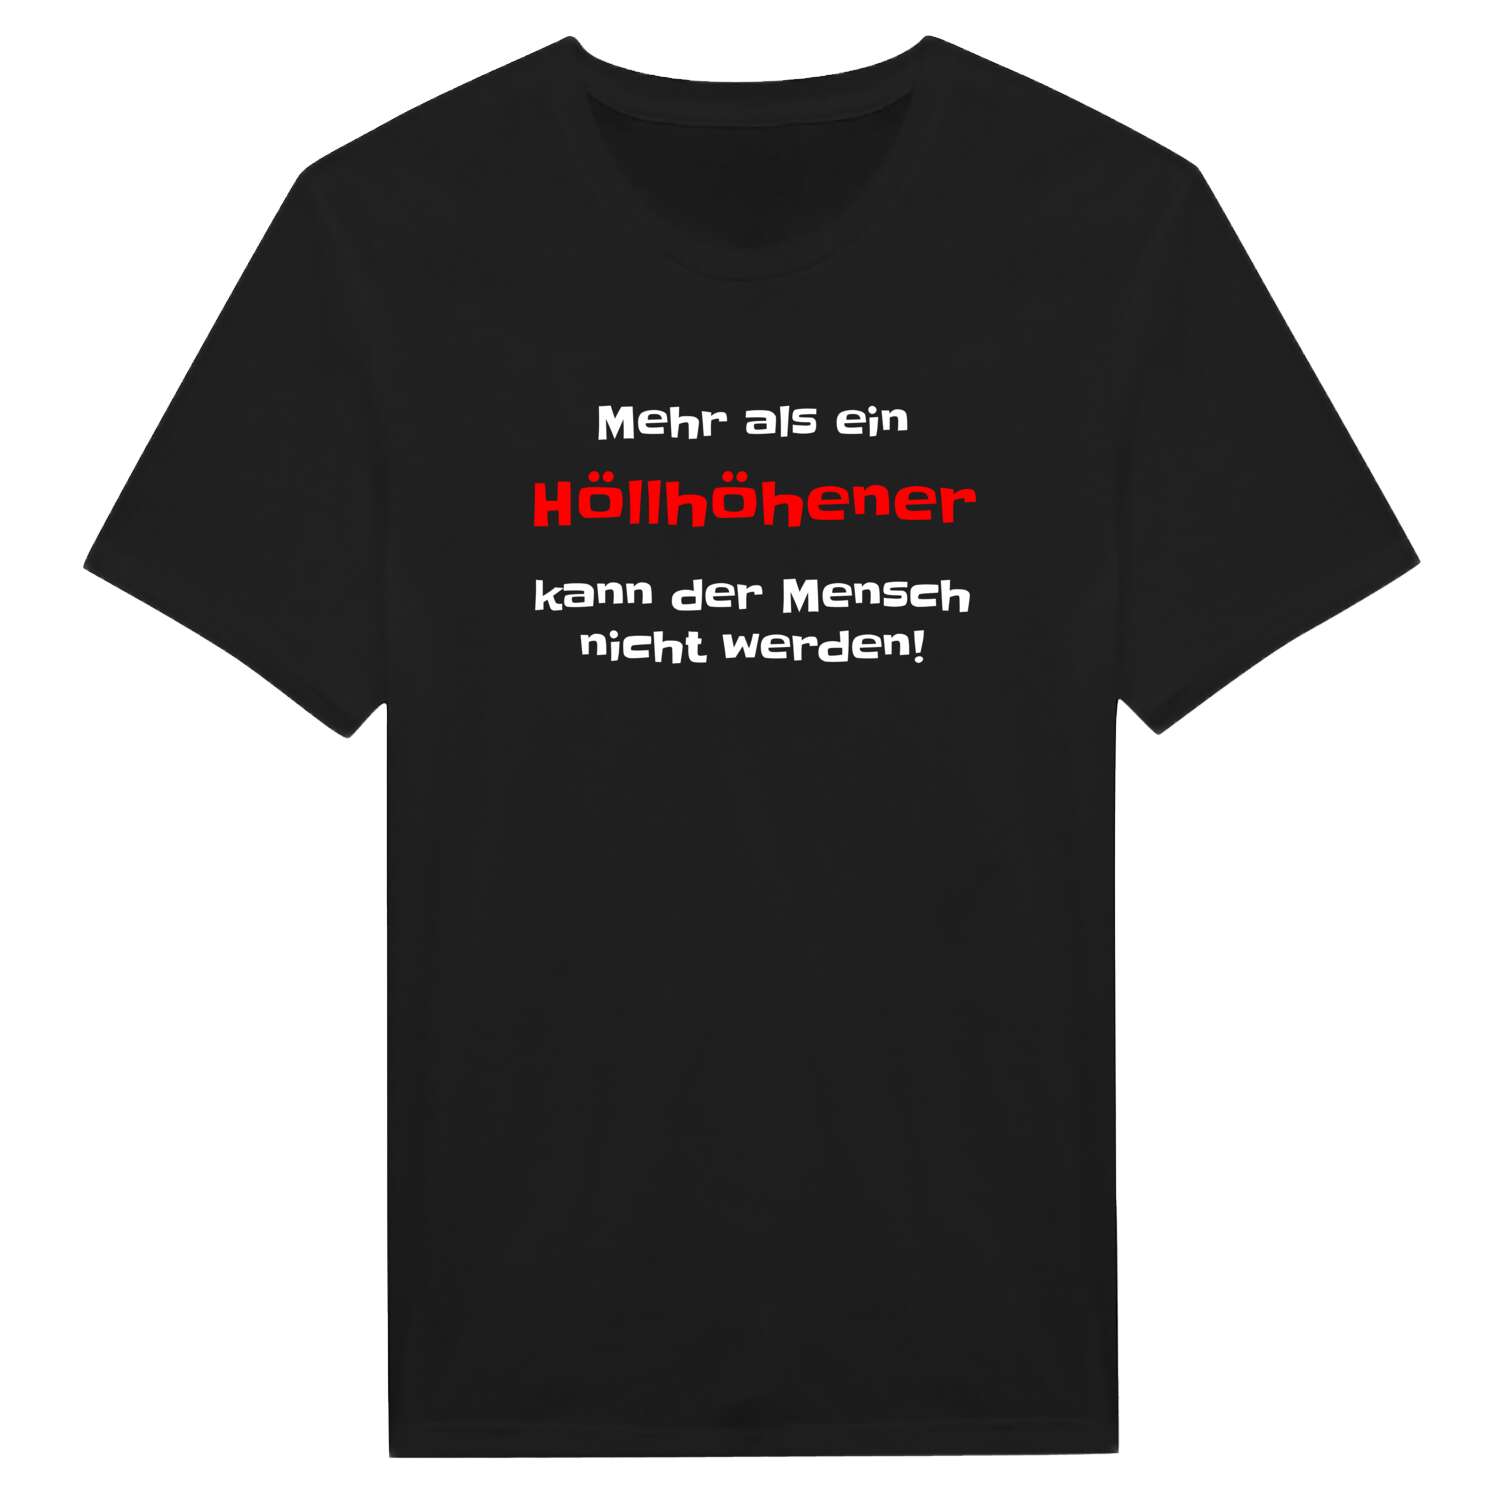 Höllhöhe T-Shirt »Mehr als ein«